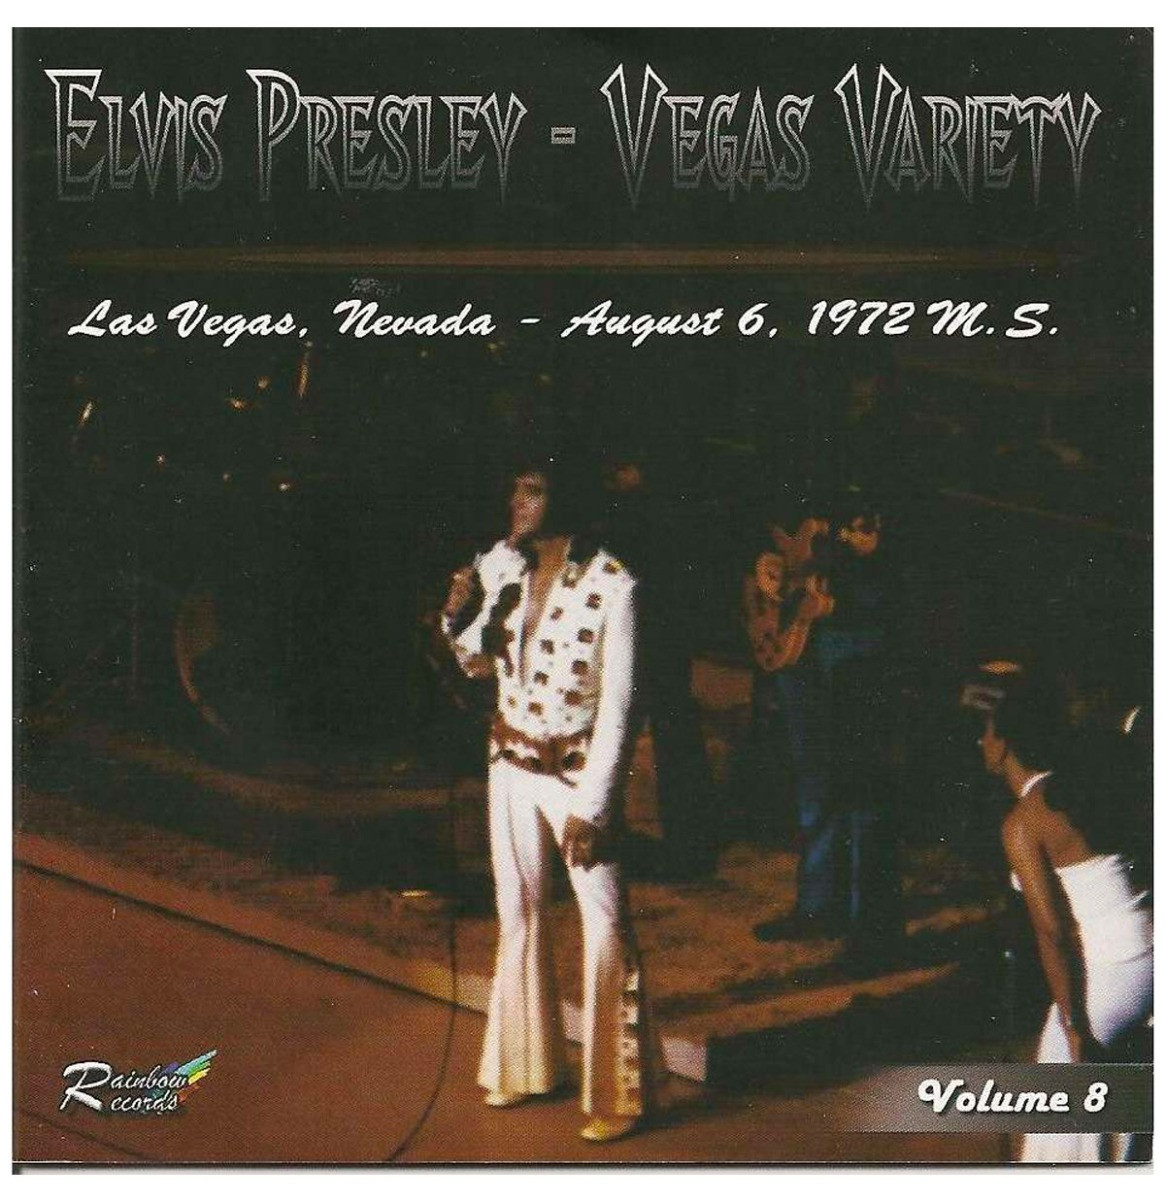 Elvis Presley - Vegas Variety Vol. 8 Las Vegas August 6 1972 CD